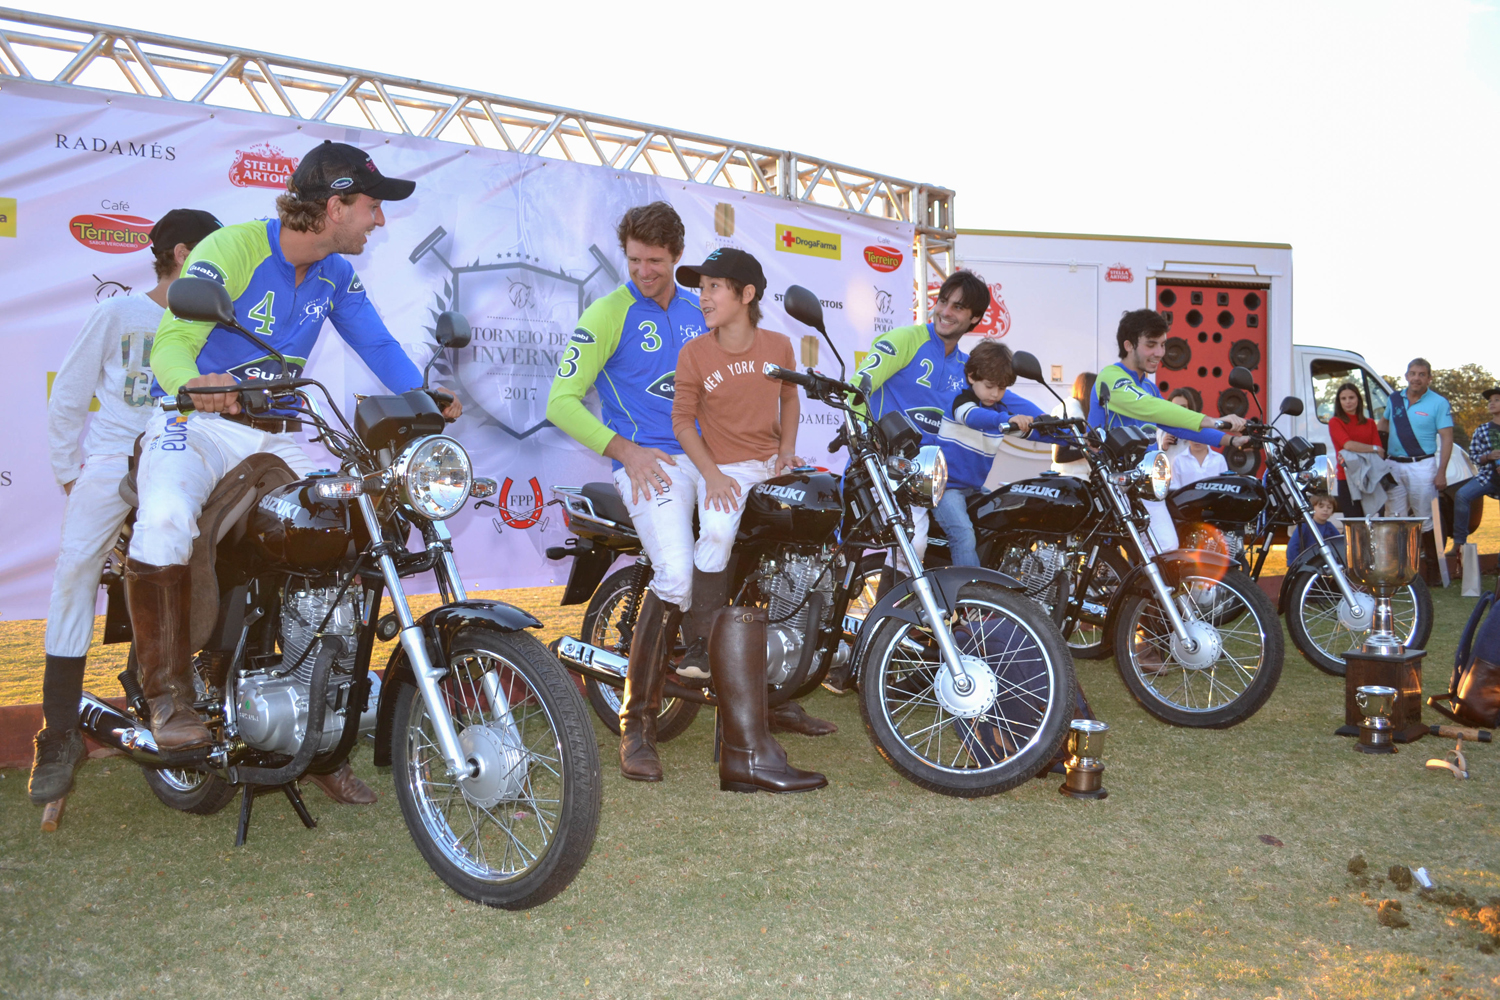 Equipe Guabi, campeã em 2017, com suas motos de premiação (crédito - Marília Lobo / 30jardas)